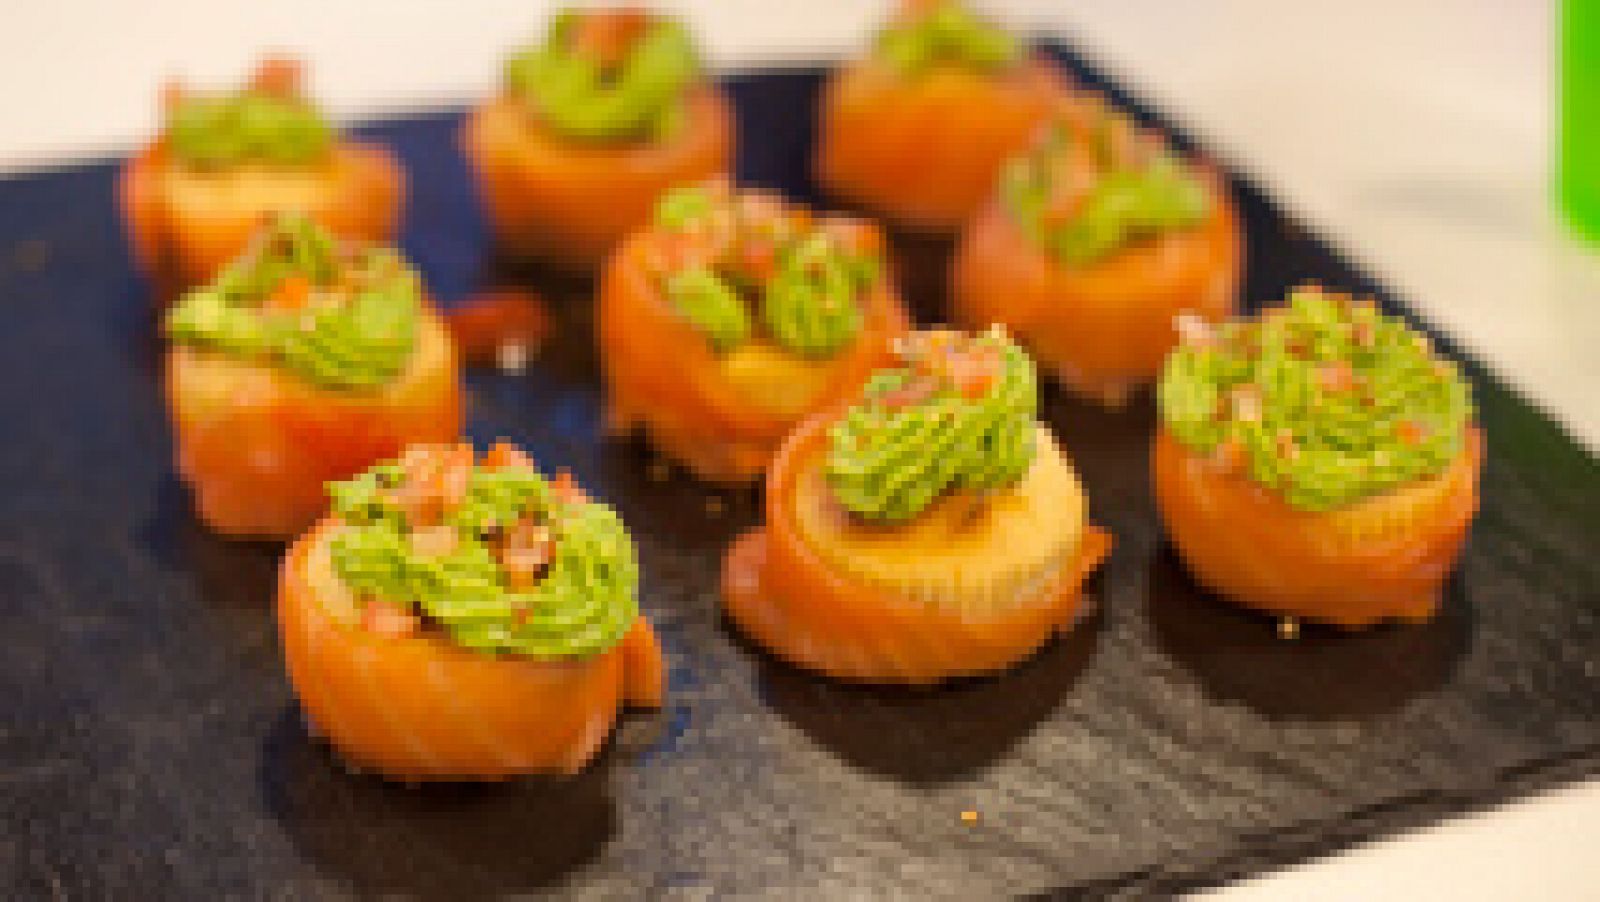 Cupcakes de salmón mexicano 